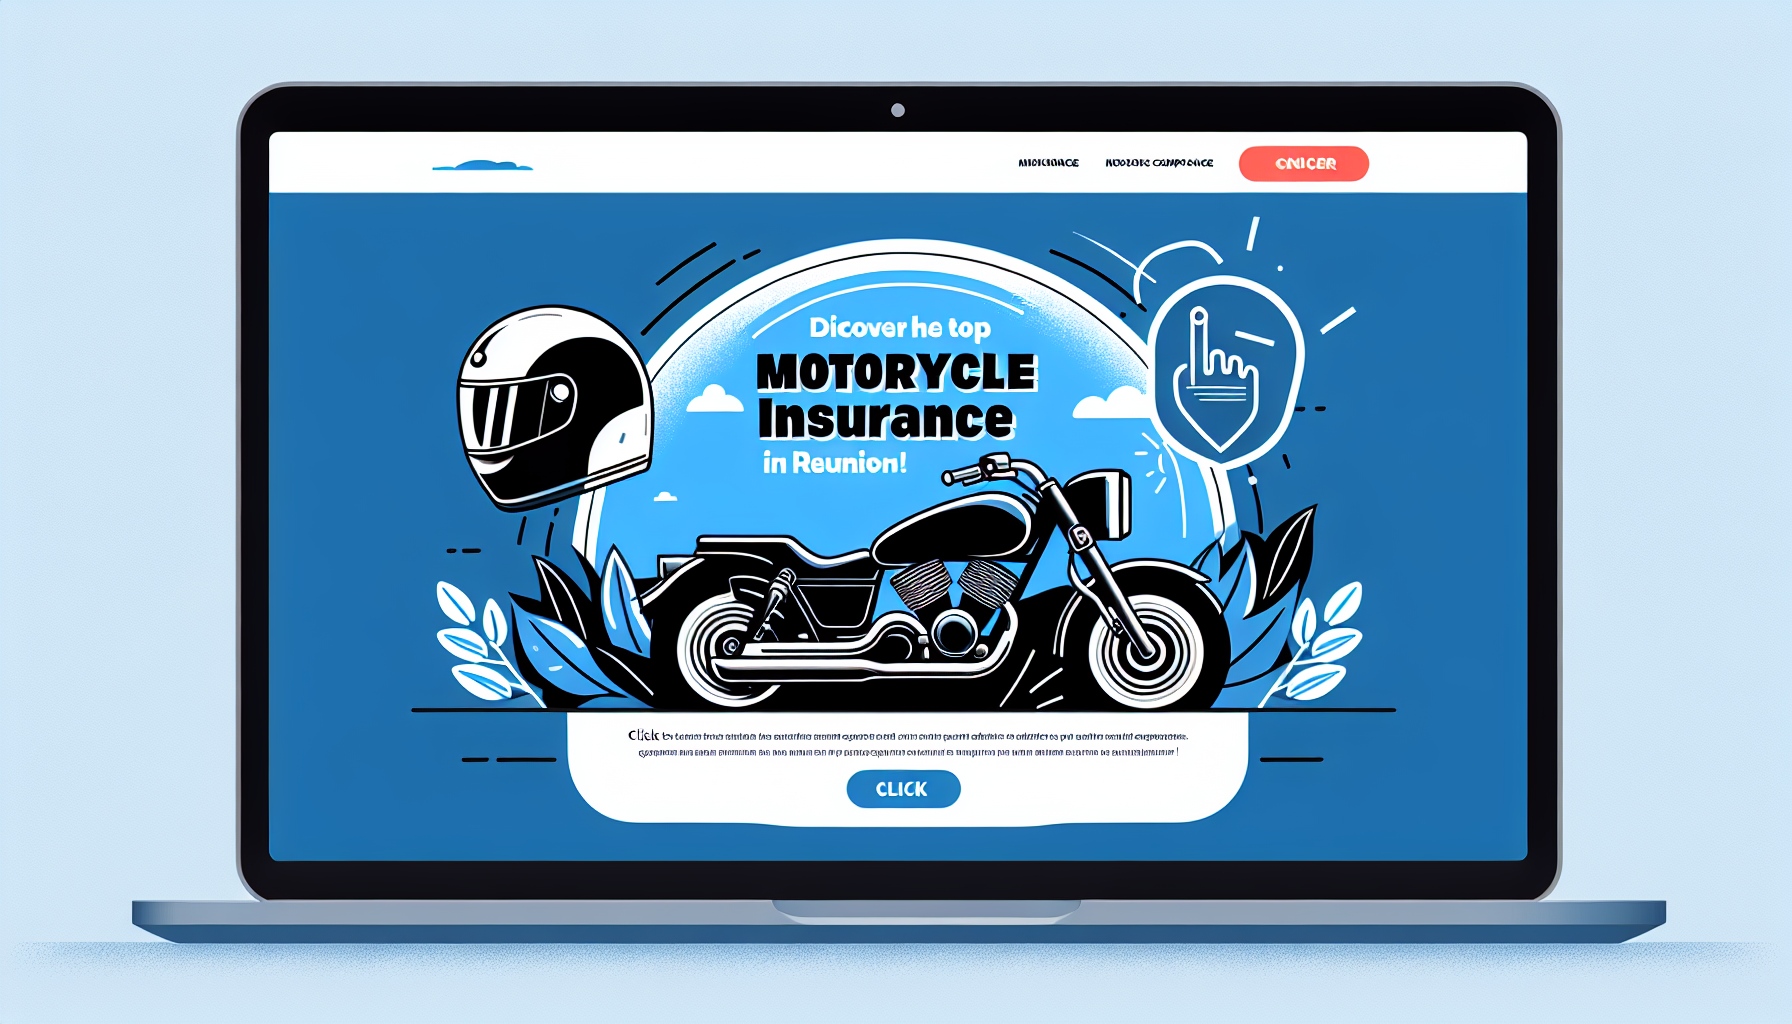 découvrez les compagnies d'assurance moto les plus populaires à la réunion et trouvez la meilleure couverture pour votre moto avec notre guide.